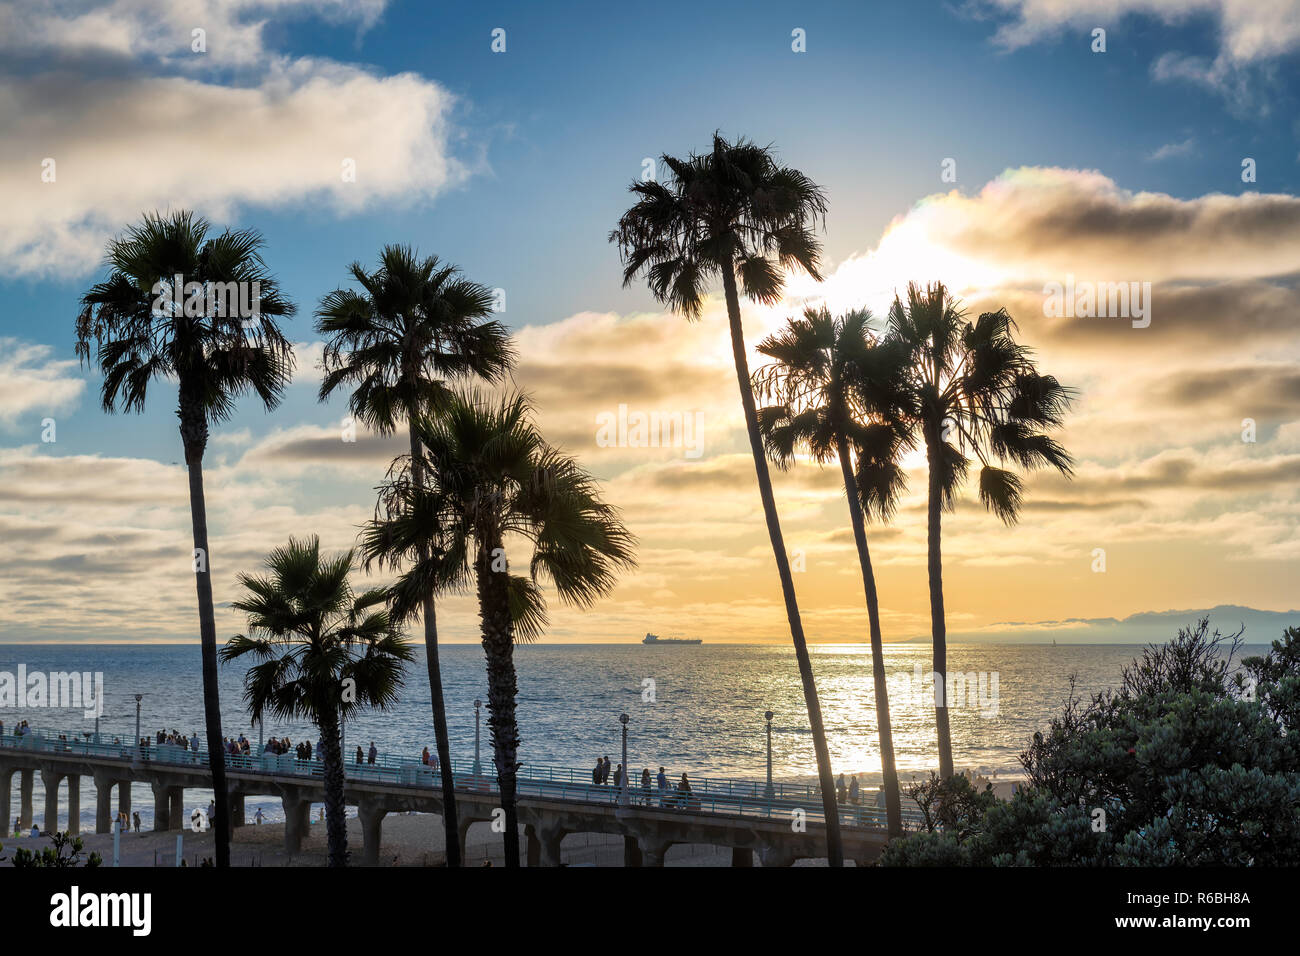 California beach at sunset Stock Photo